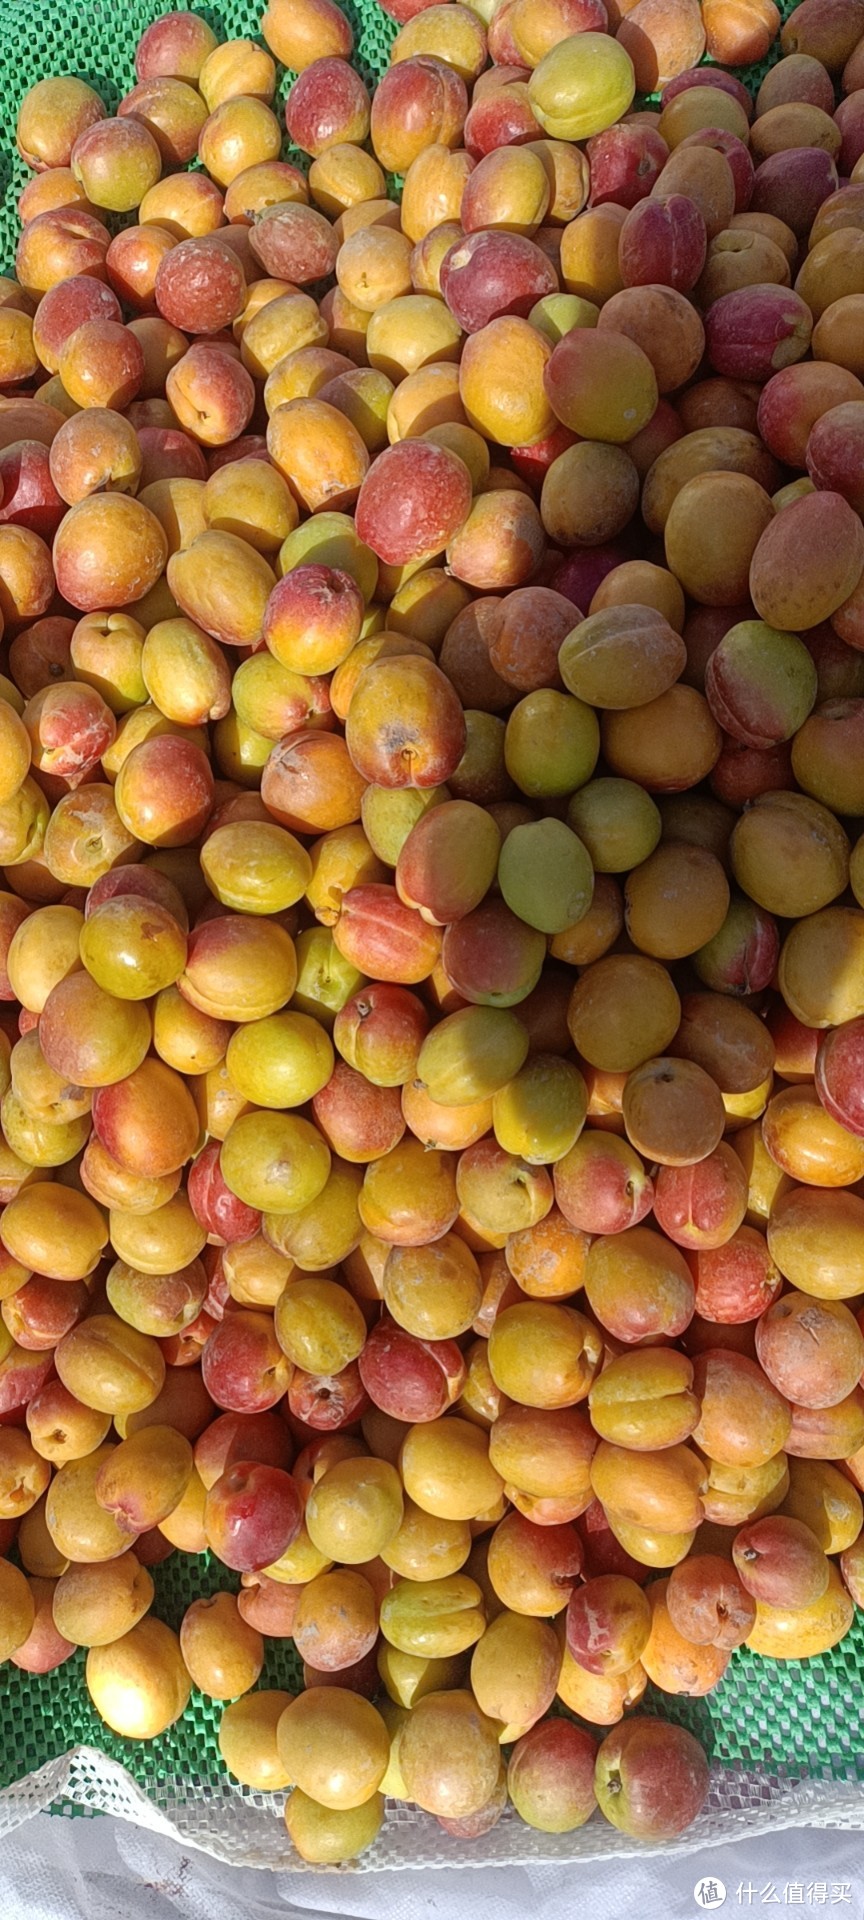 新疆的水果季从杏子开始